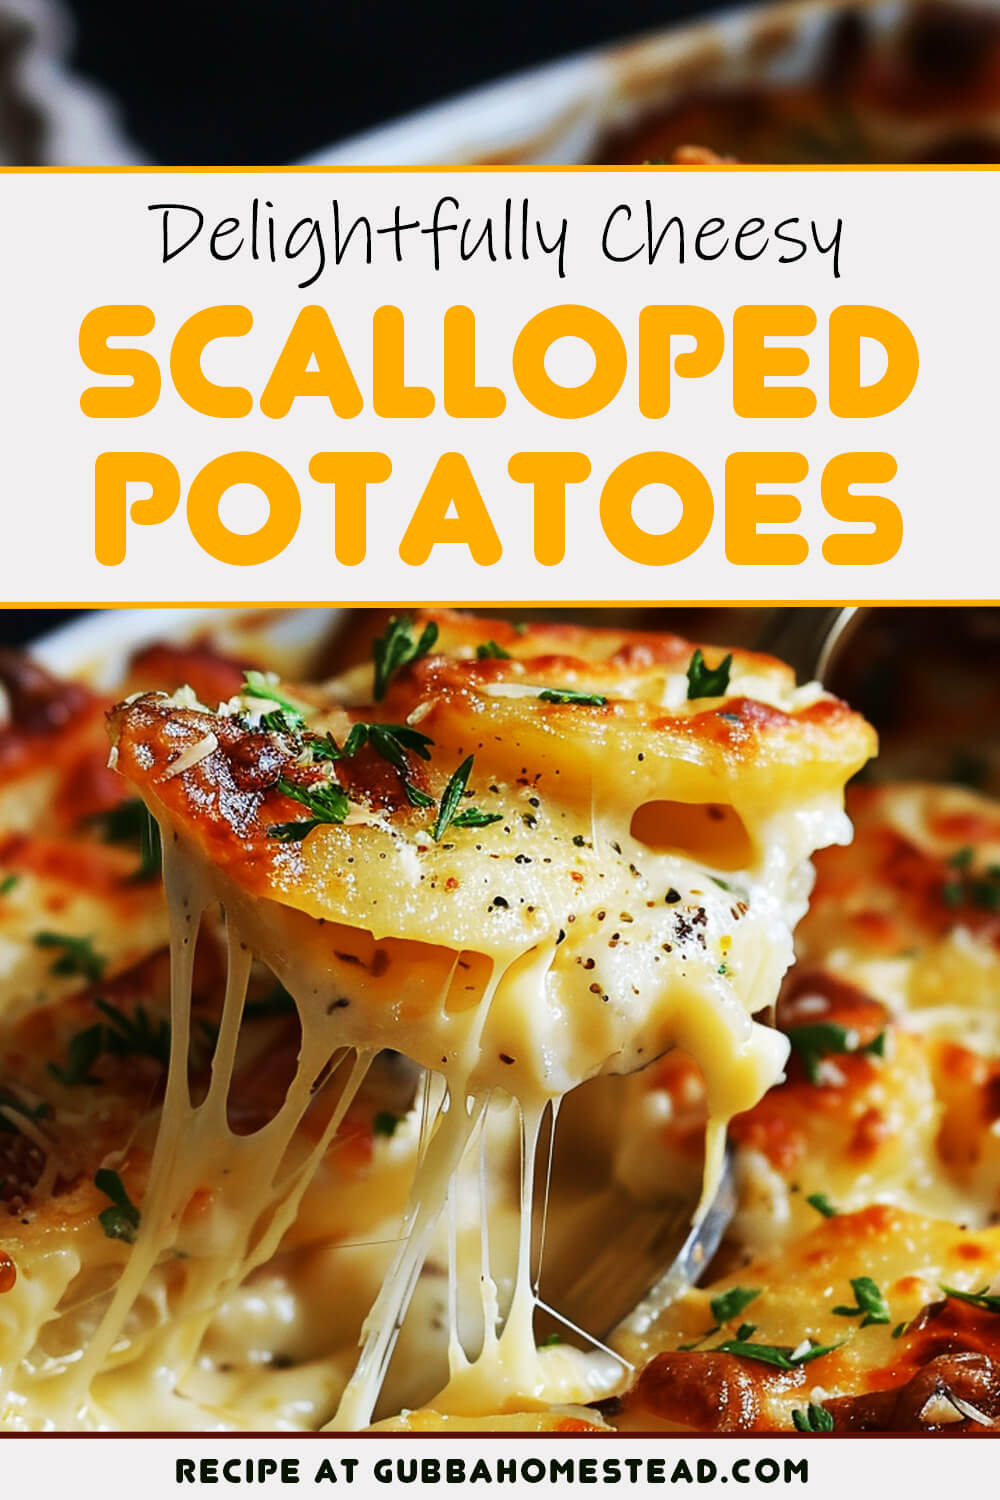 Delightfully Cheesy Scalloped Potatoes